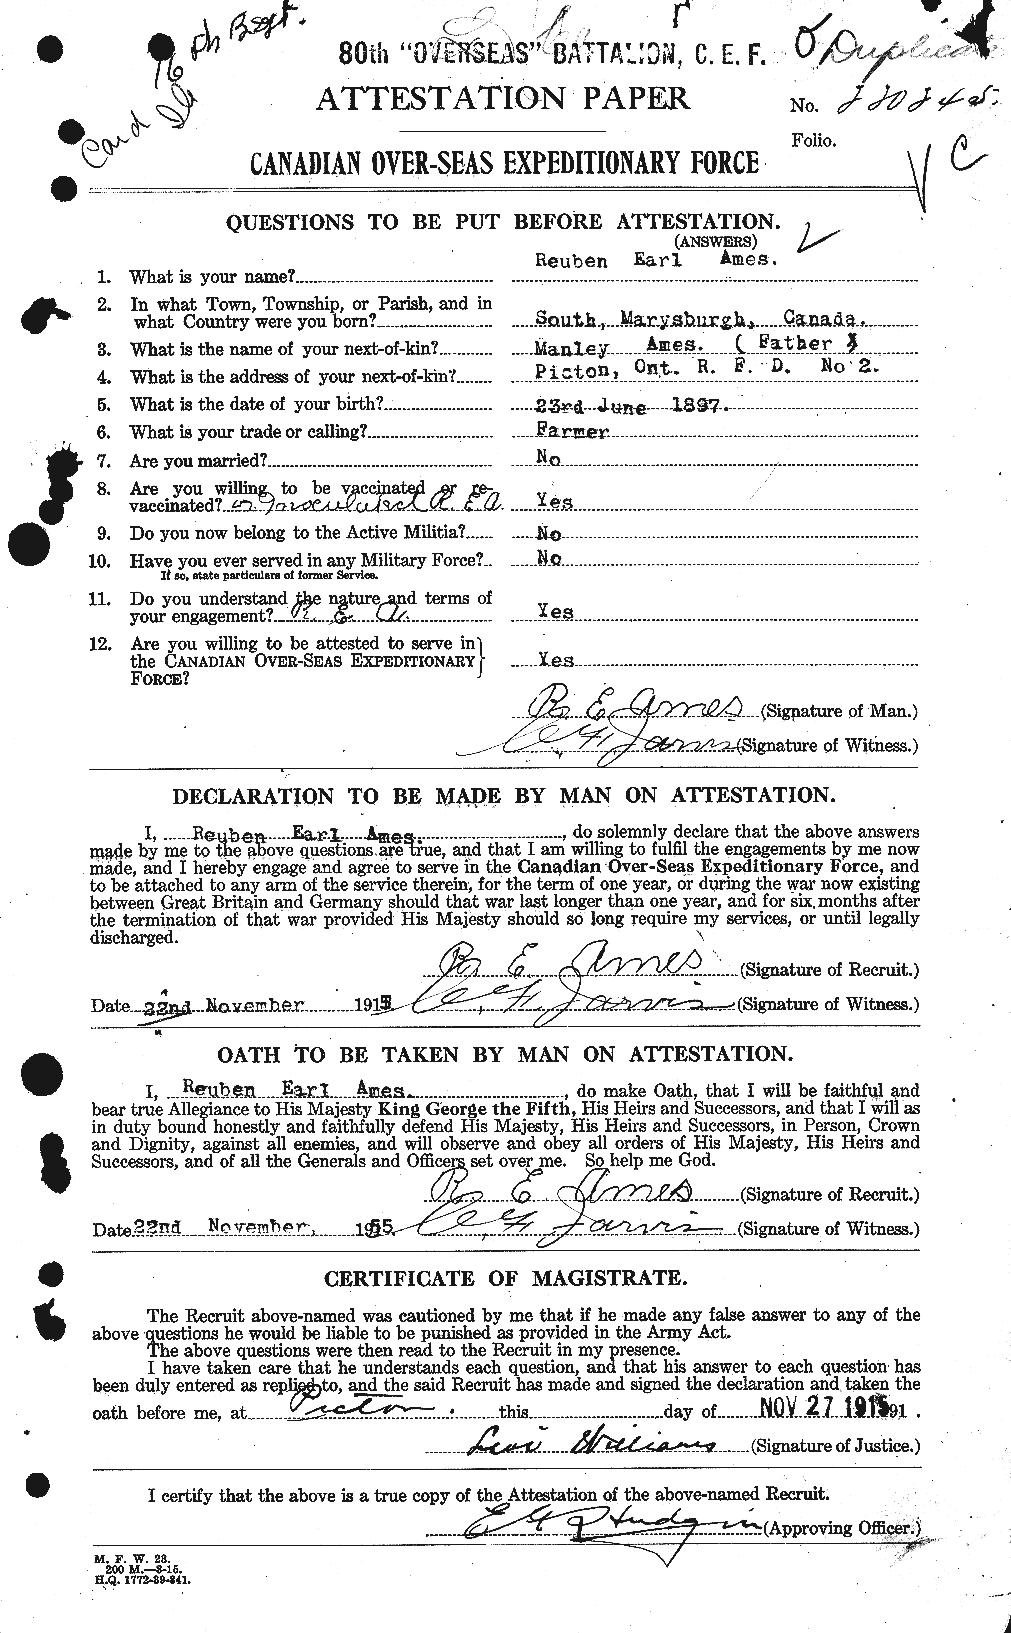 Dossiers du Personnel de la Première Guerre mondiale - CEC 208828a